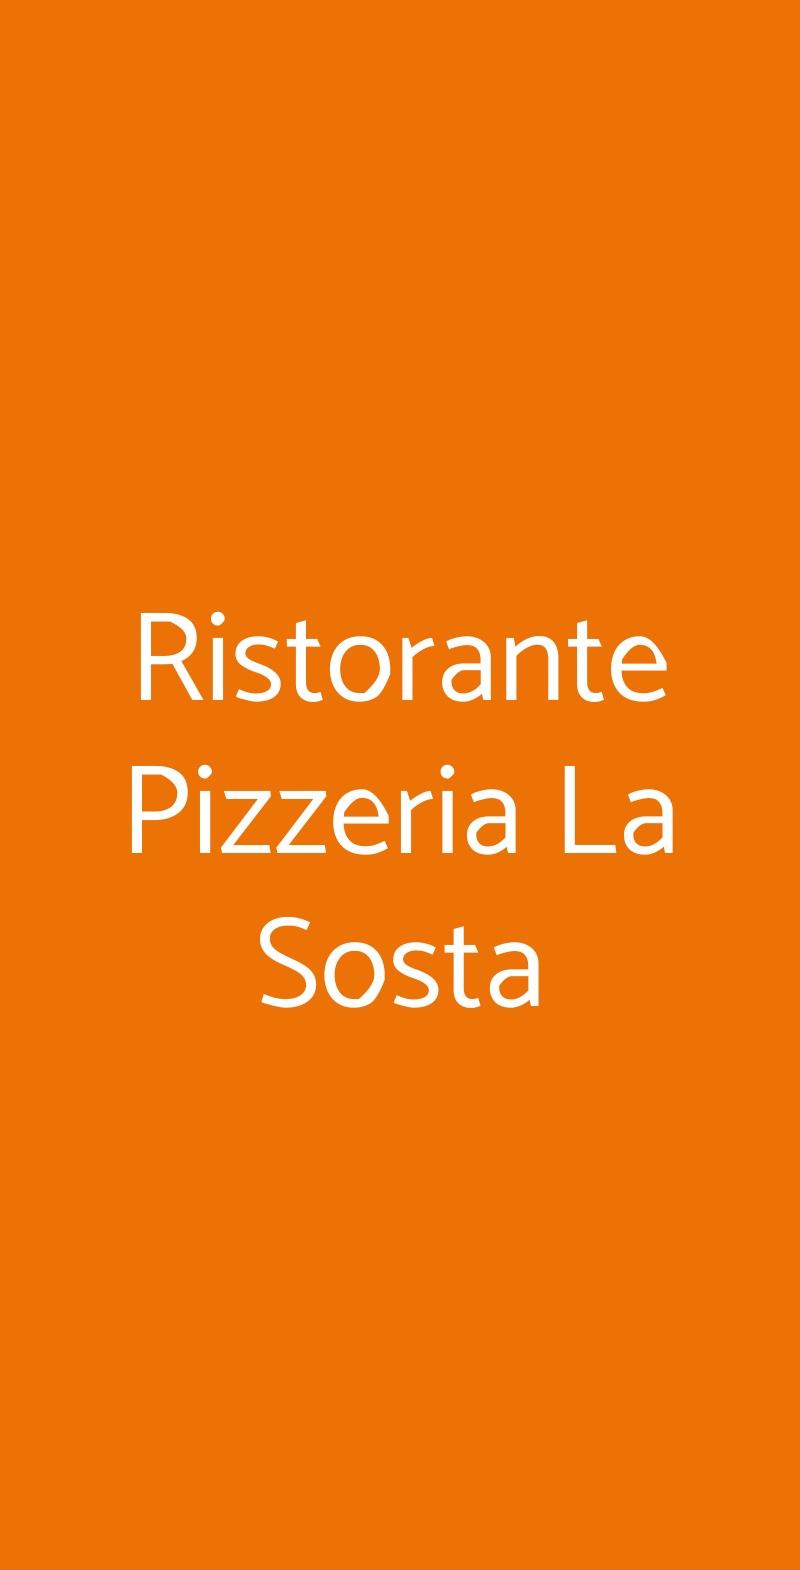 Ristorante Pizzeria La Sosta Olbia menù 1 pagina